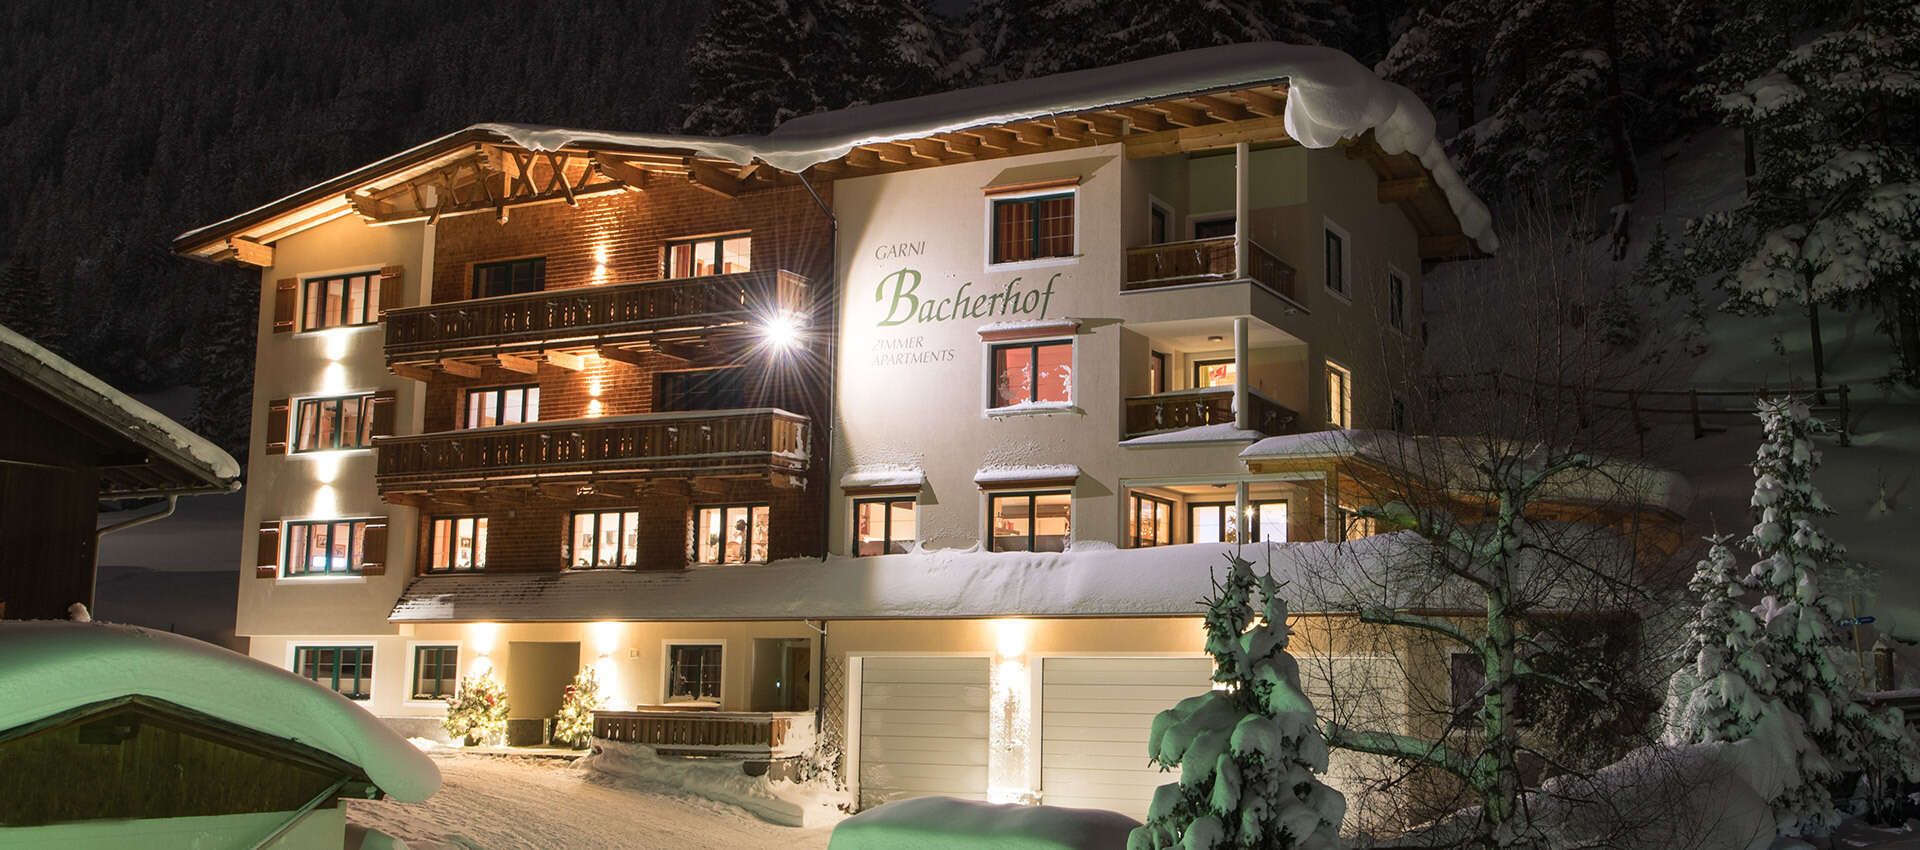 Hotel Garni Bacherhof in St Anton am Arlberg